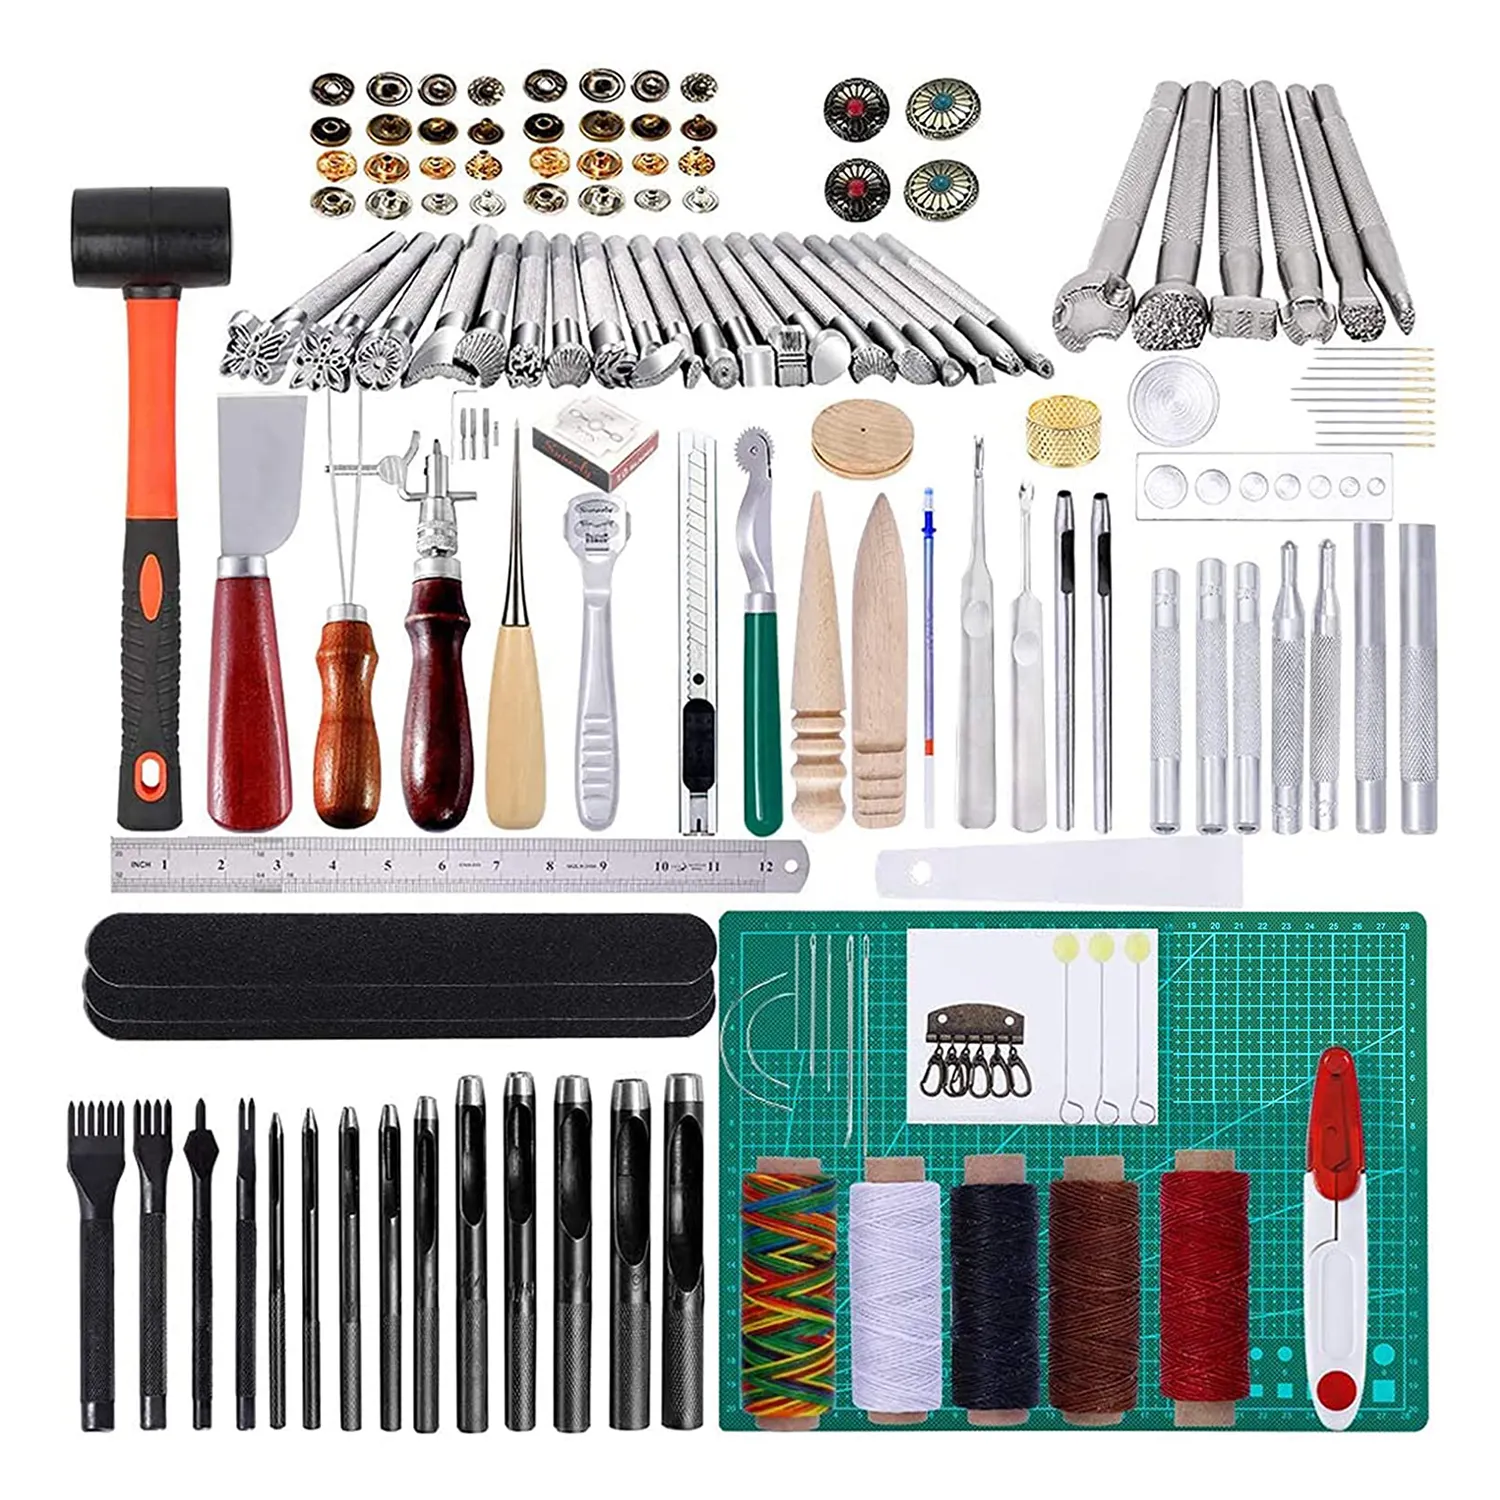 Kit de ferramentas de couro diy, artesanato de couro, costura, perfurador diy, ferramentas de couro L-010, 148 peças